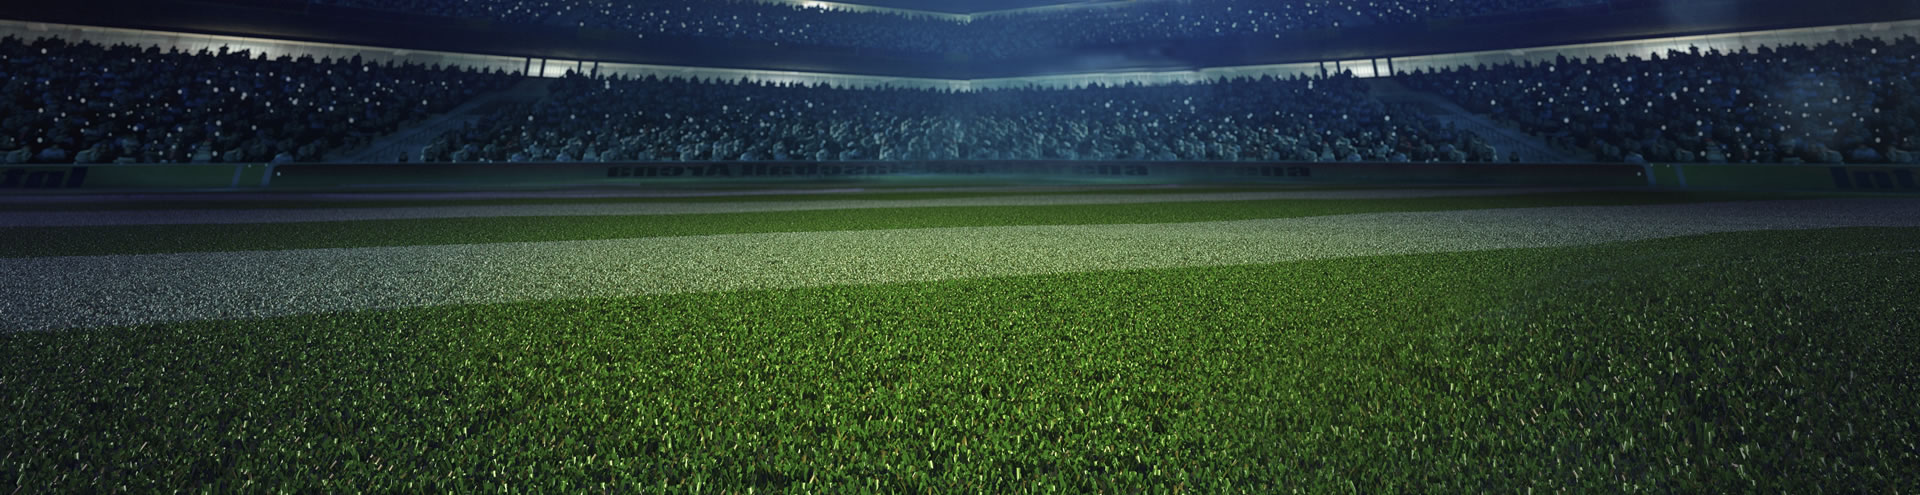 Cách đầu tư & Kinh doanh sân bóng đá cỏ nhân tạo hiệu quả